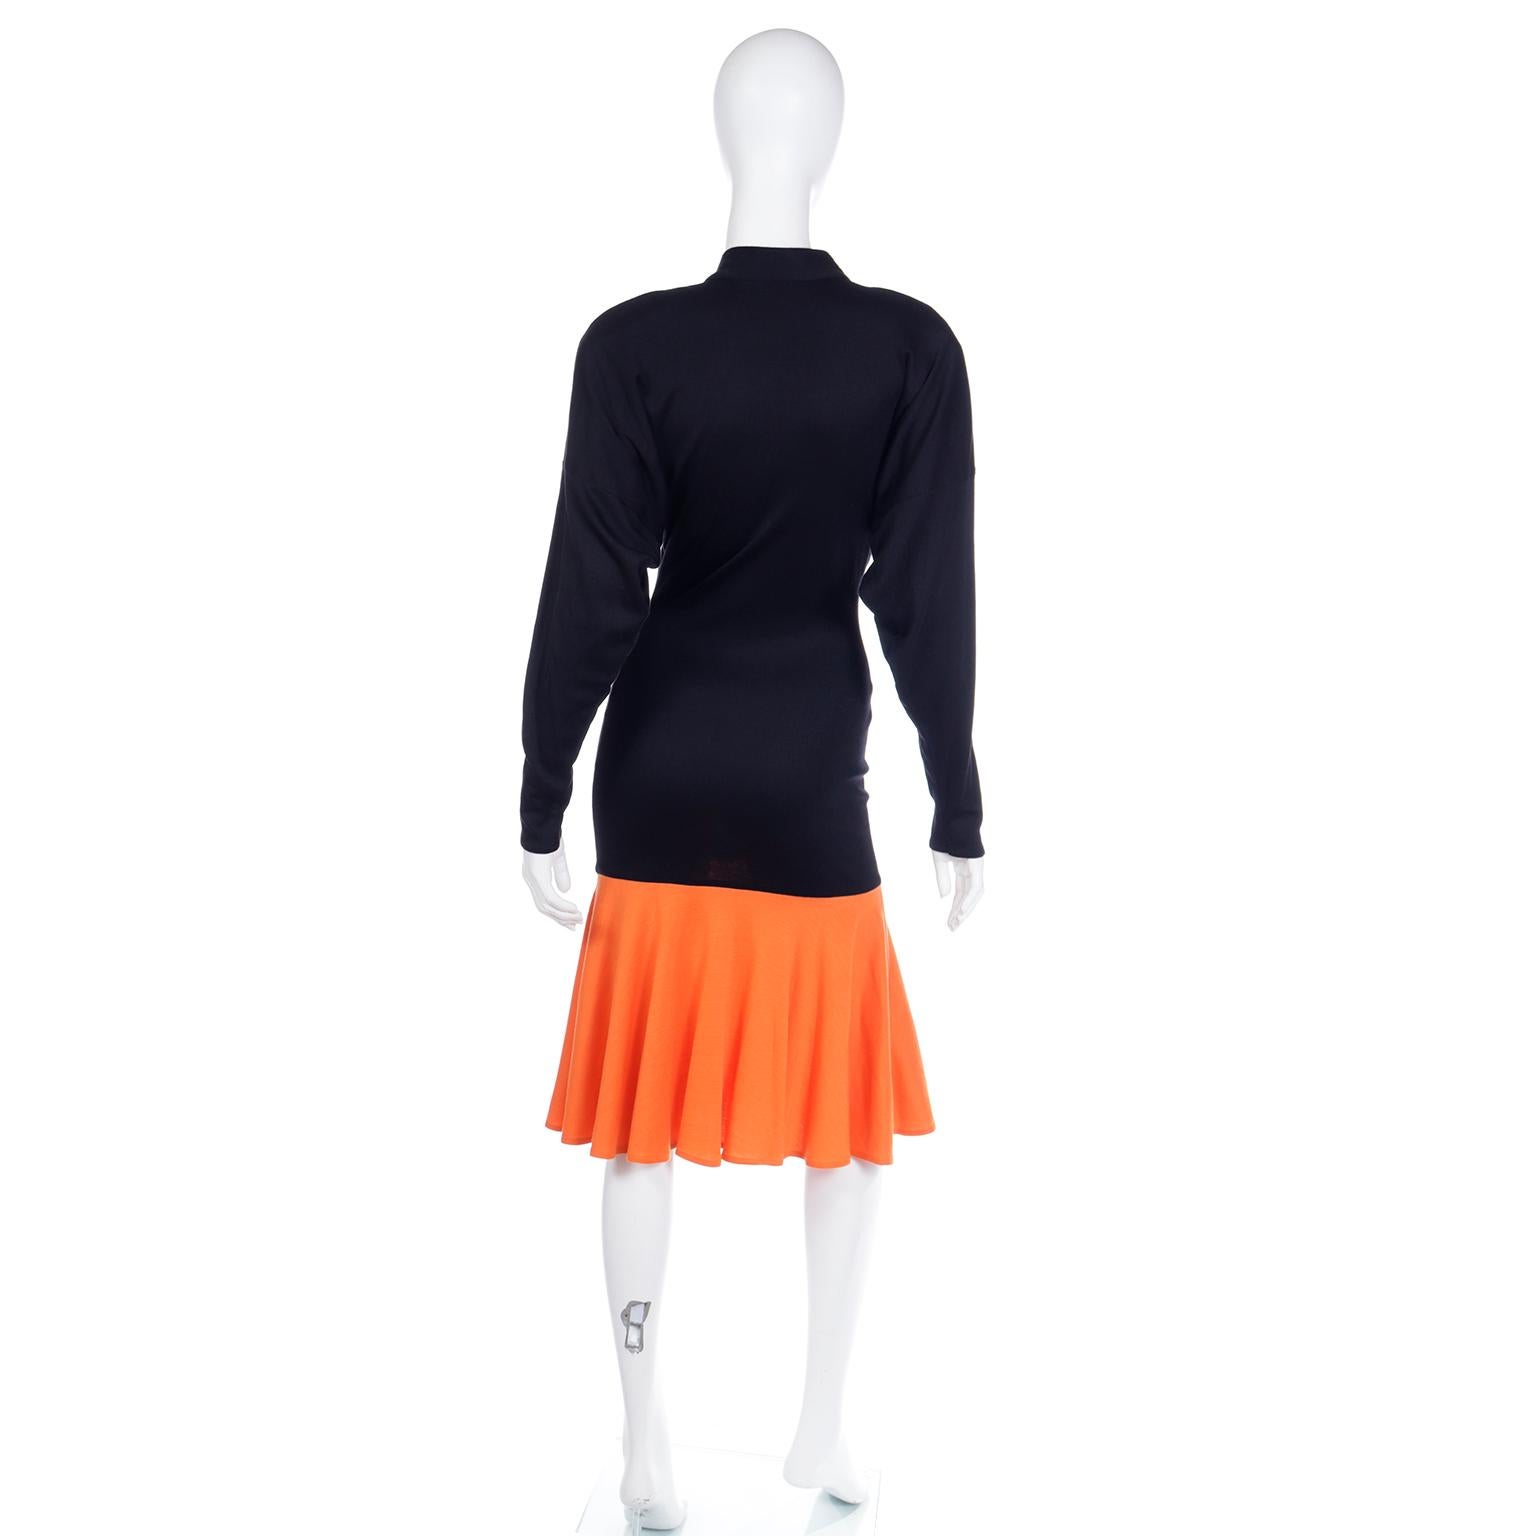 Rare Patrick Kelly Paris F/W 1988 Black & Orange Color Block Vintage Dress For Sale 2